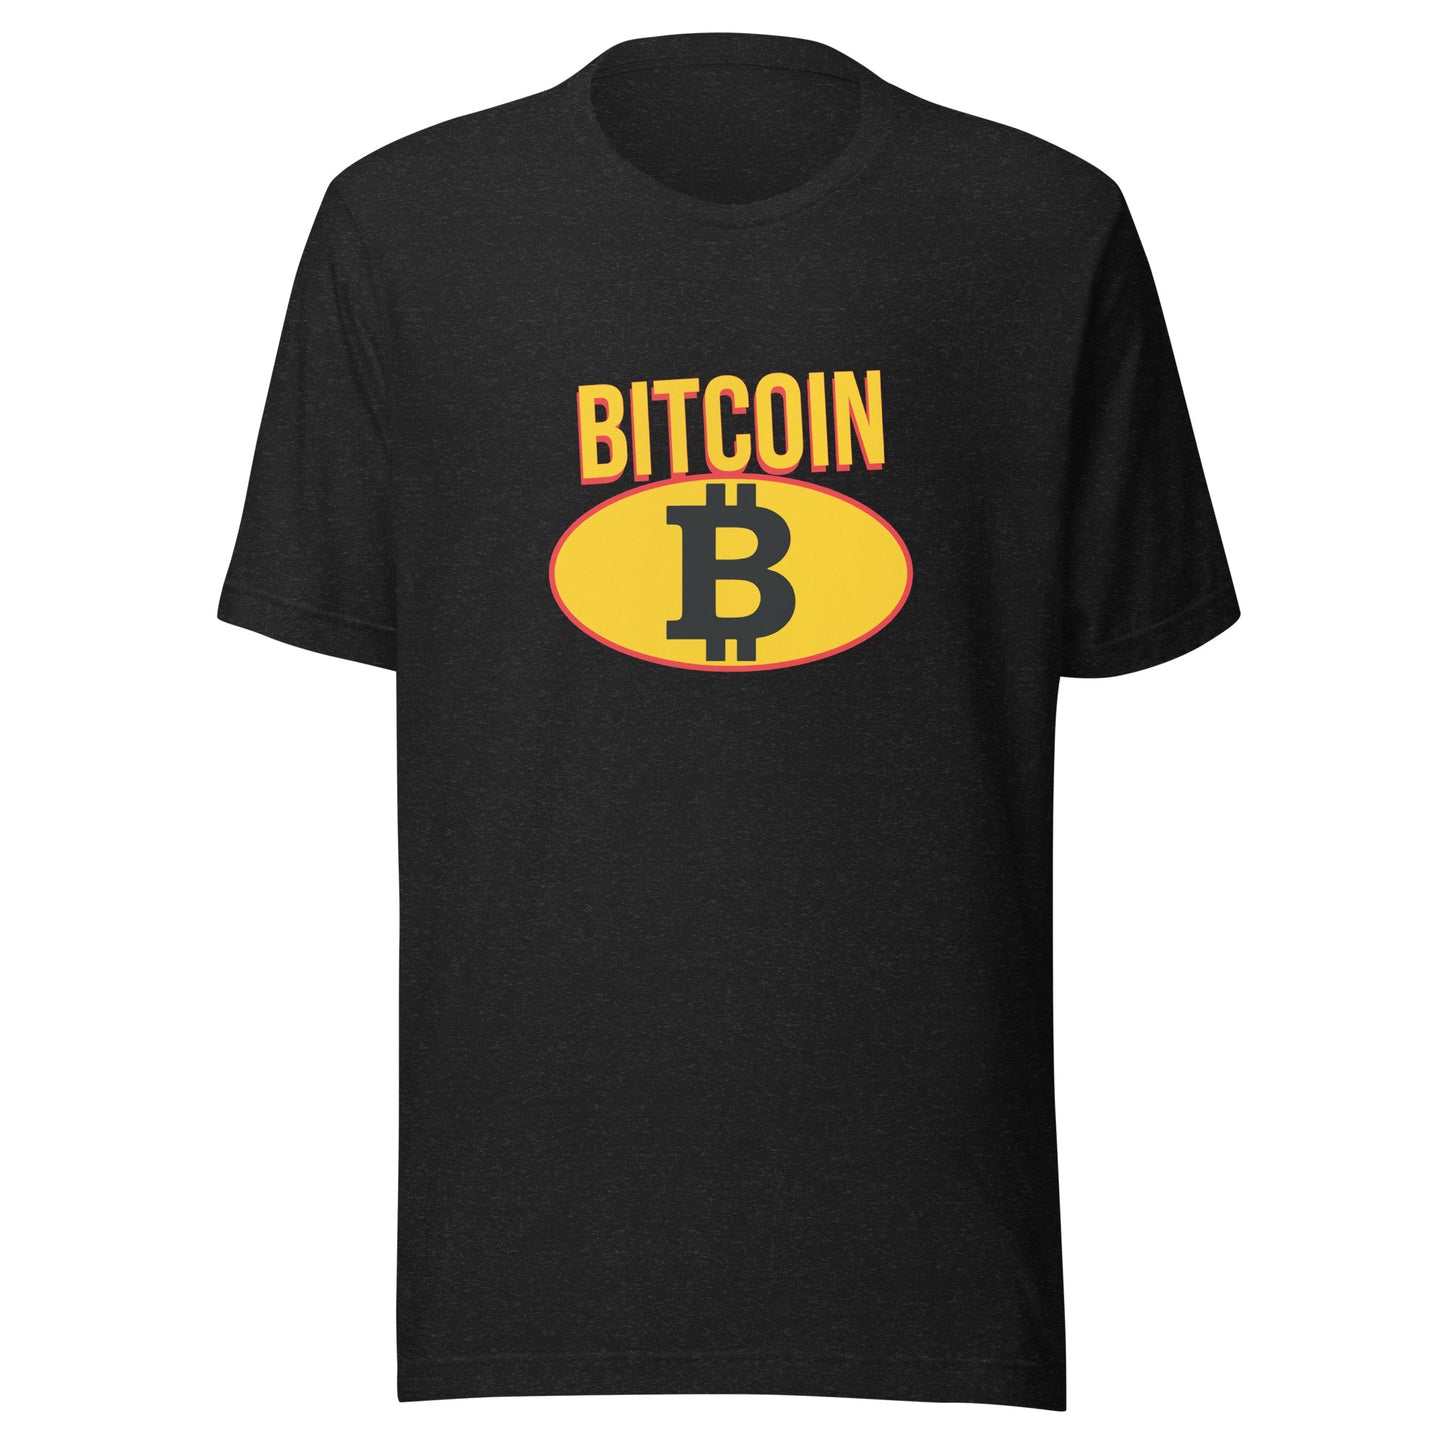 Bitcoin B